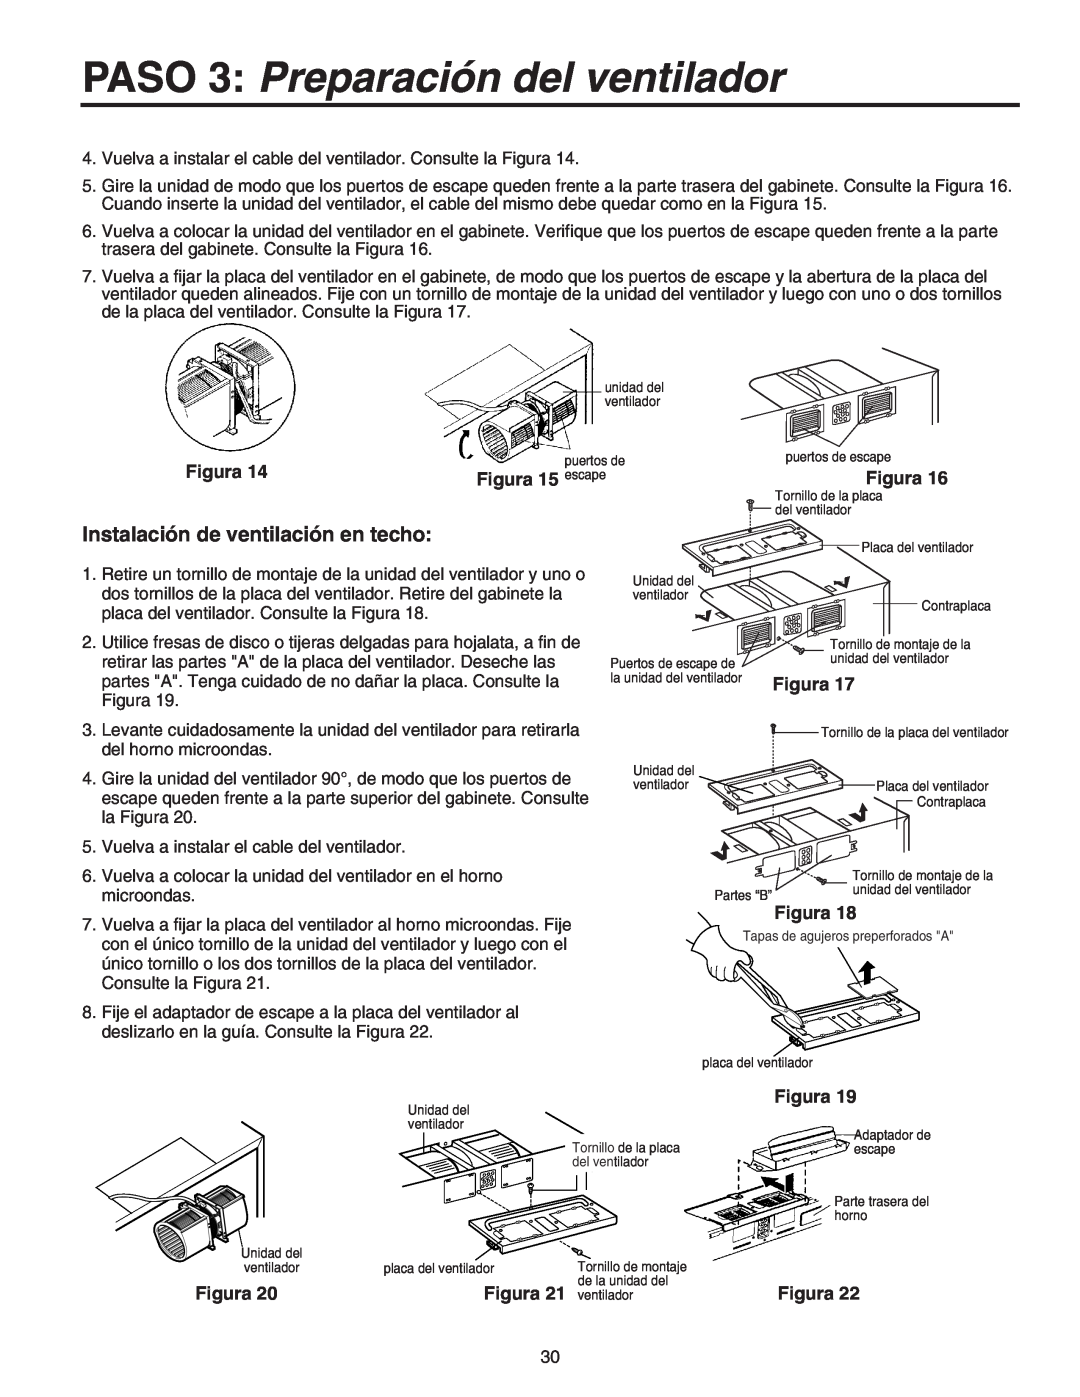 Maytag 8101P641-60 Instalación de ventilación en techo, PASO 3 Preparación del ventilador, Figura 15 escape 